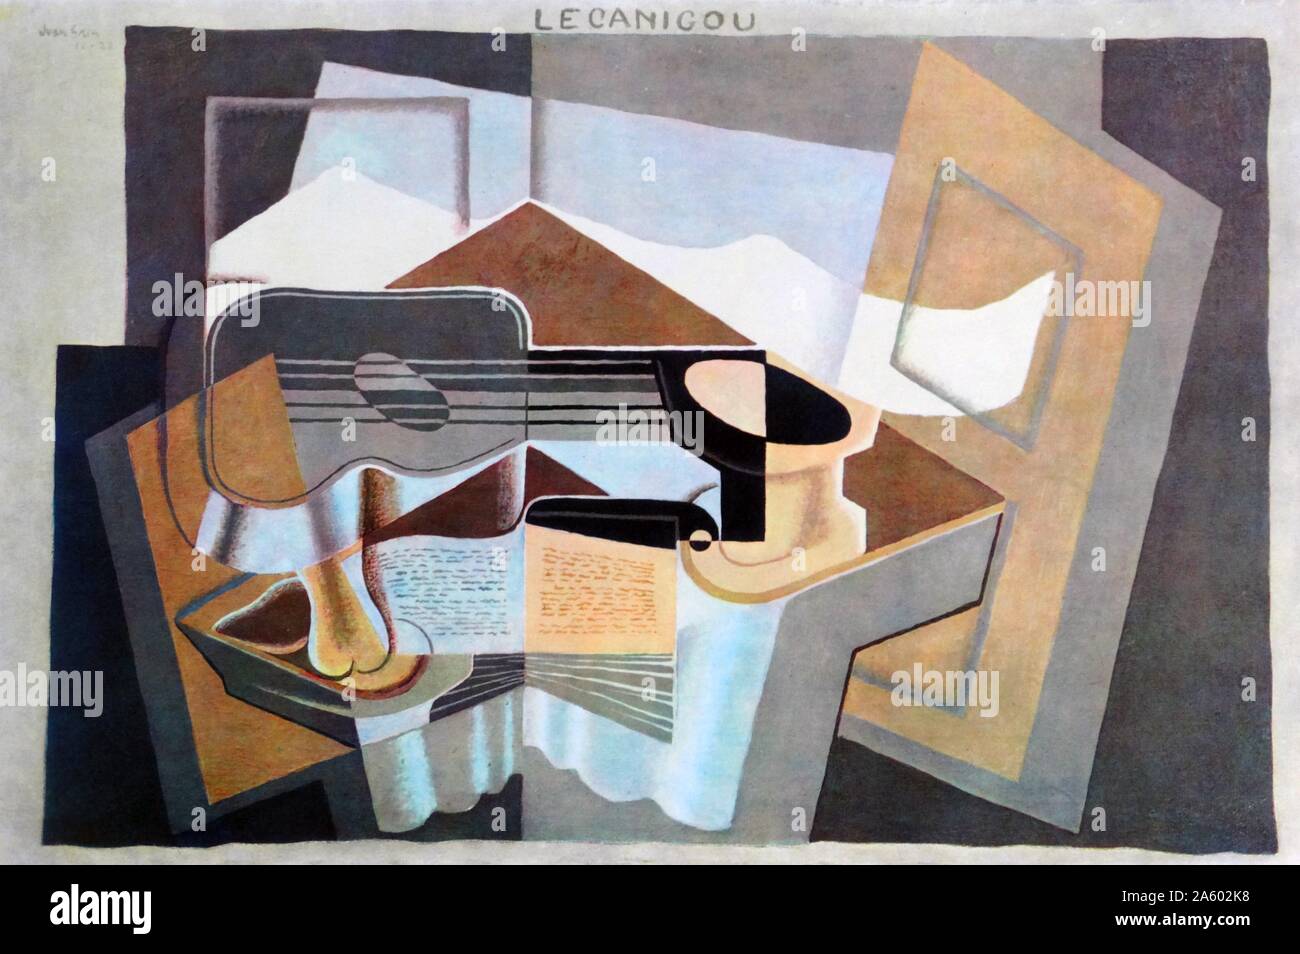 Le canigou 1921, por Juan Gris (1887 - 1927), pintor y escultor español conectado al género artístico innovador Cubismo Foto de stock